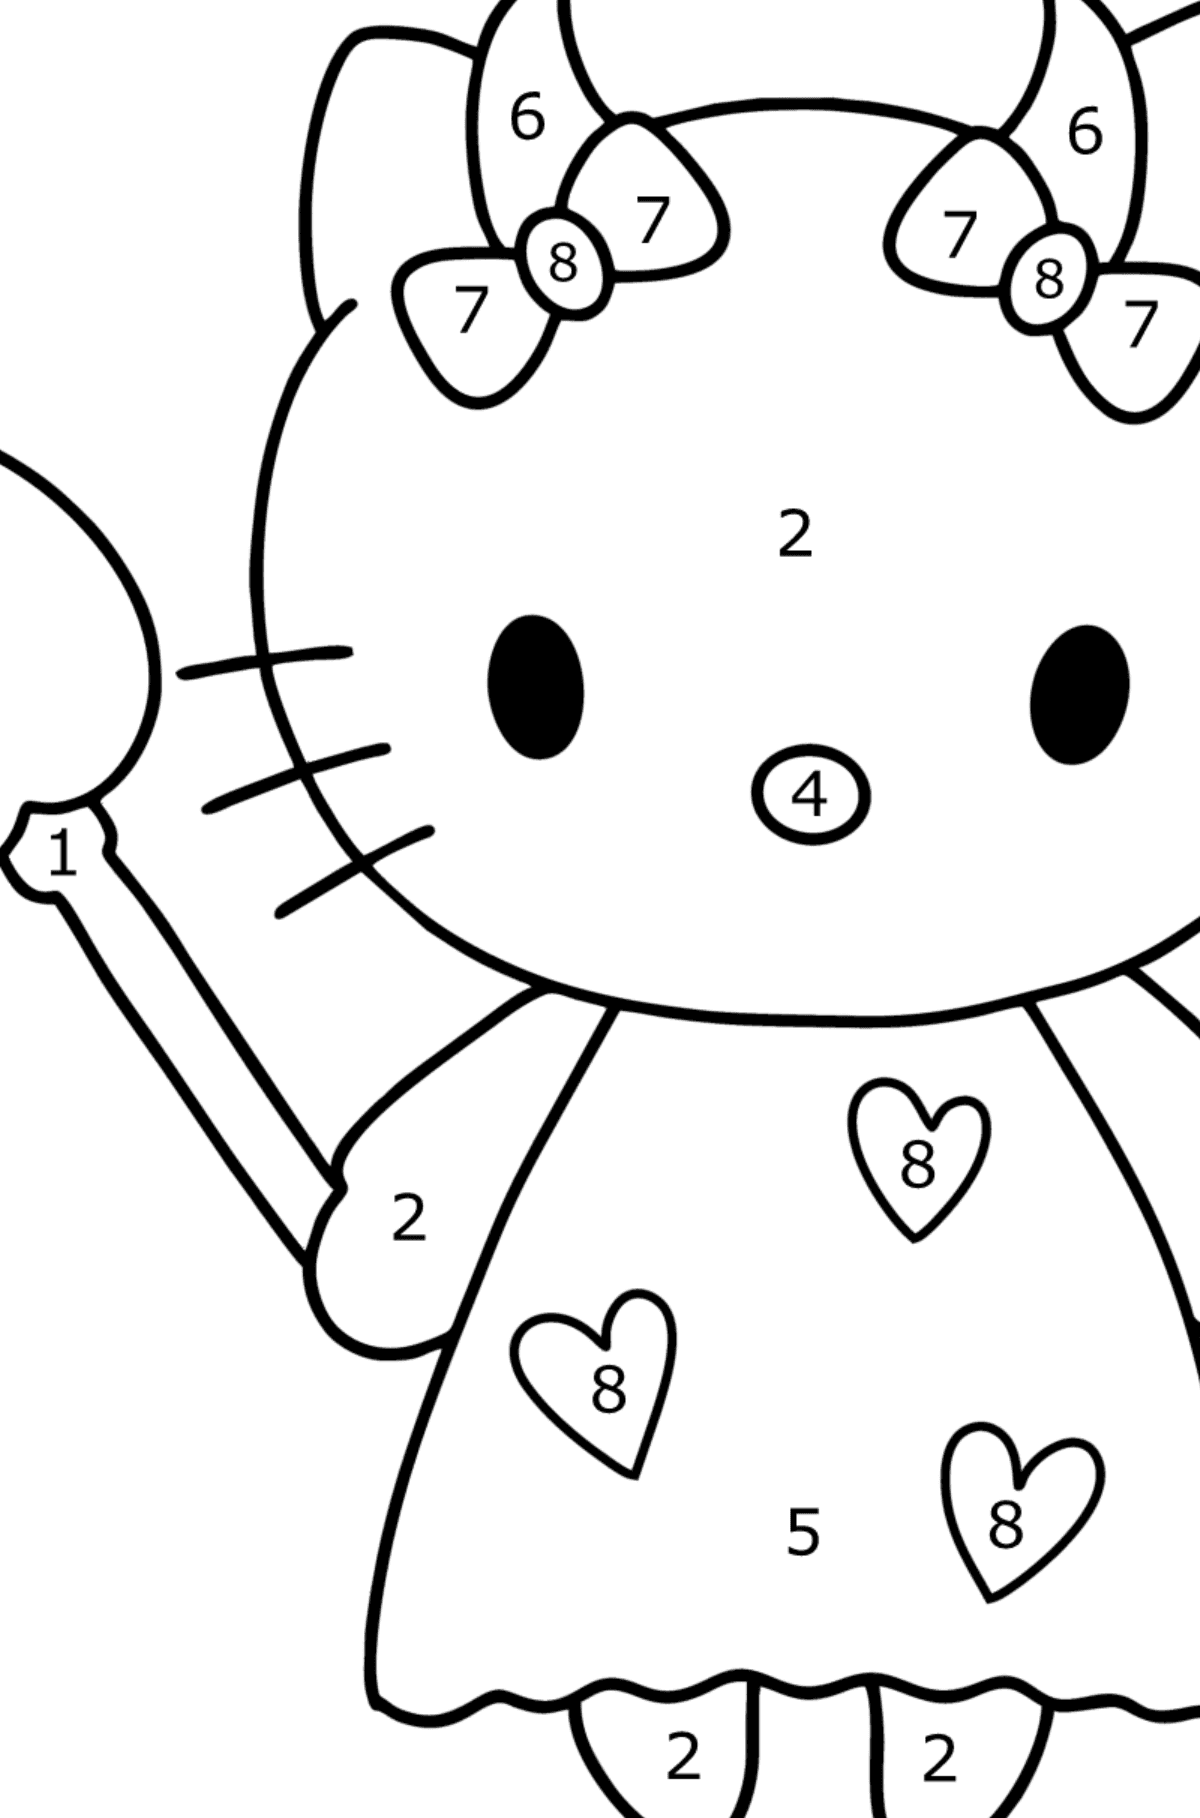 Boyama sayfası Hello Kitty şeytan - Sayılarla Boyama çocuklar için